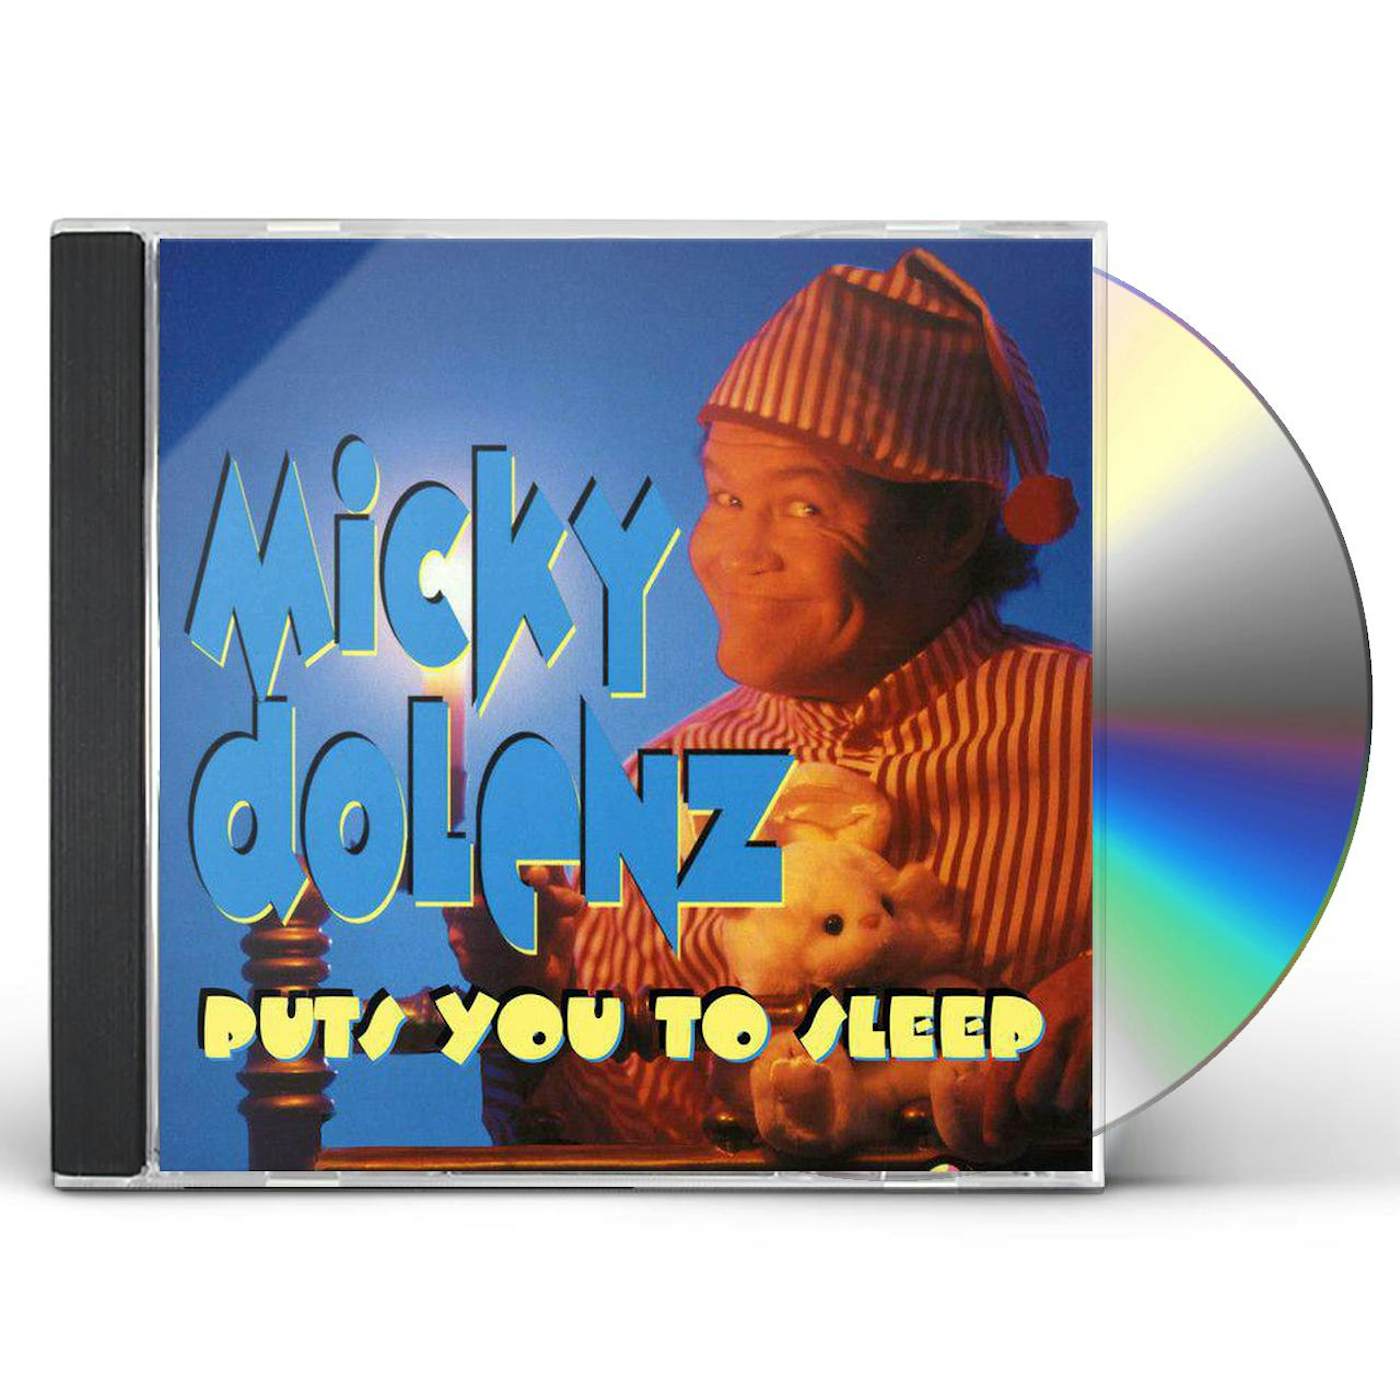 MICKY DOLENZ PUTS YOU TO SLEEP & BROADWAY MICKY CD